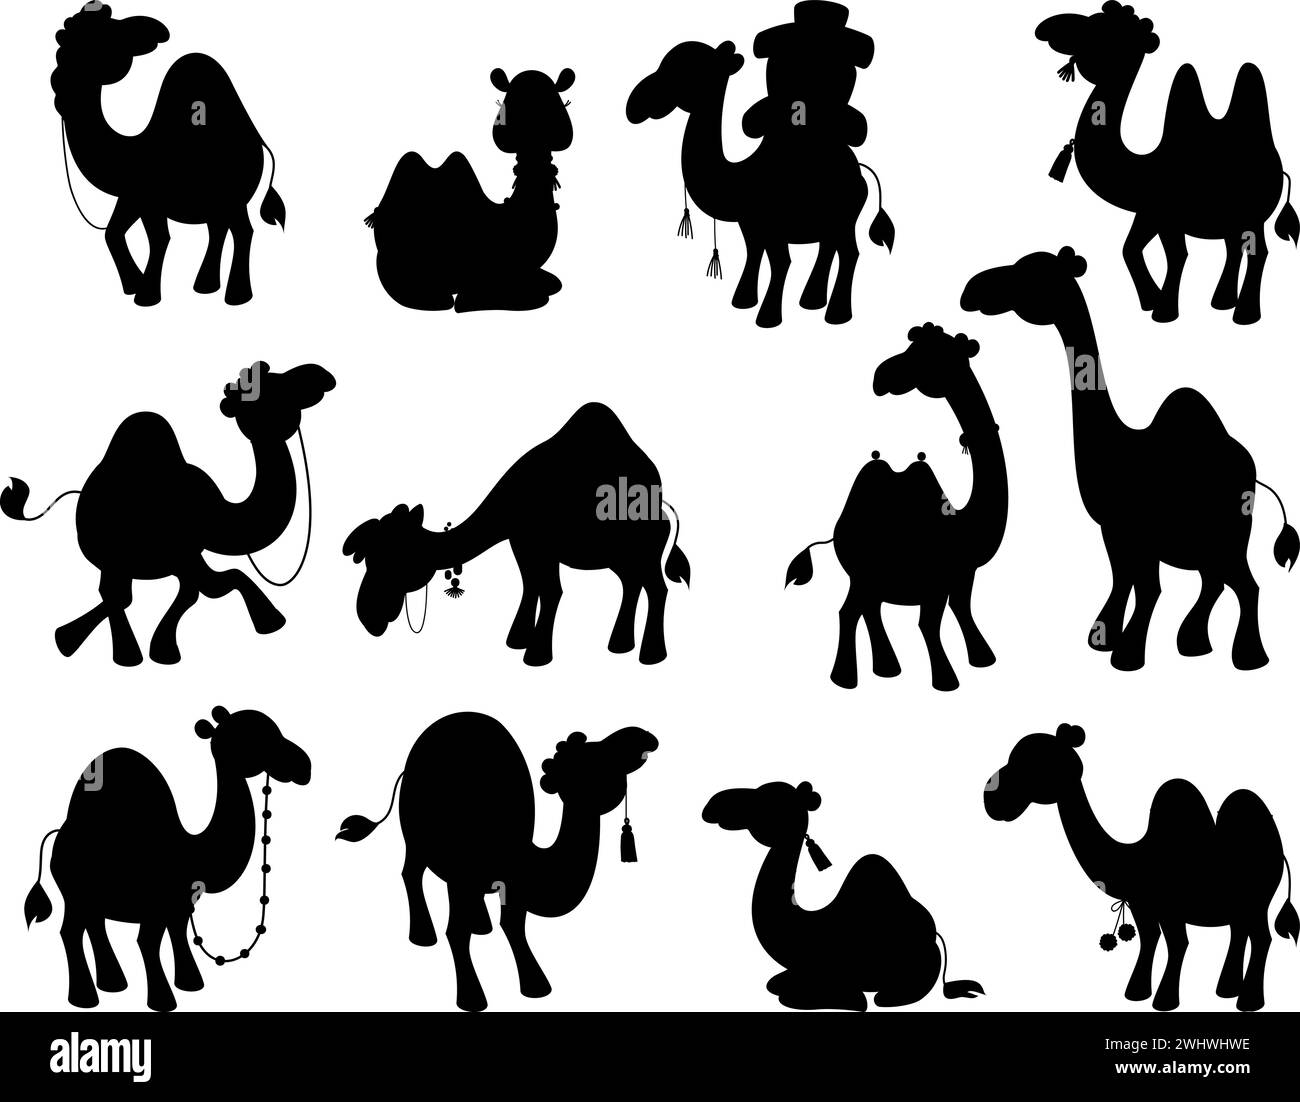 Kamelschwarze Silhouetten. Sammlung isolierter Wüstentiere. Arabische Kamelkarawane, einfache Silhouette. Dekorative Aufkleber, heutzutage Vektorset Stock Vektor